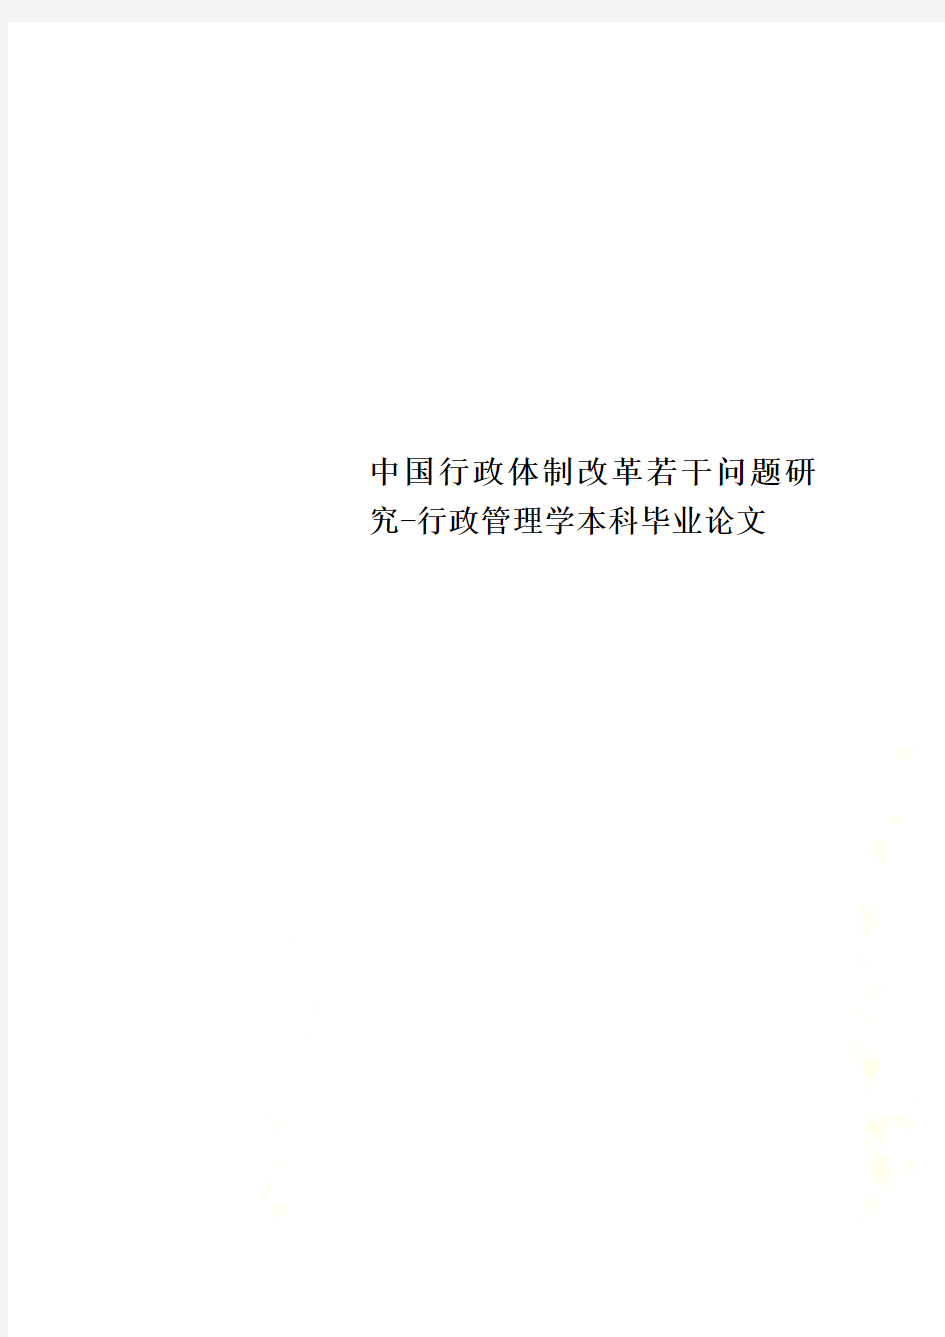 中国行政体制改革若干问题研究-行政管理学本科毕业论文